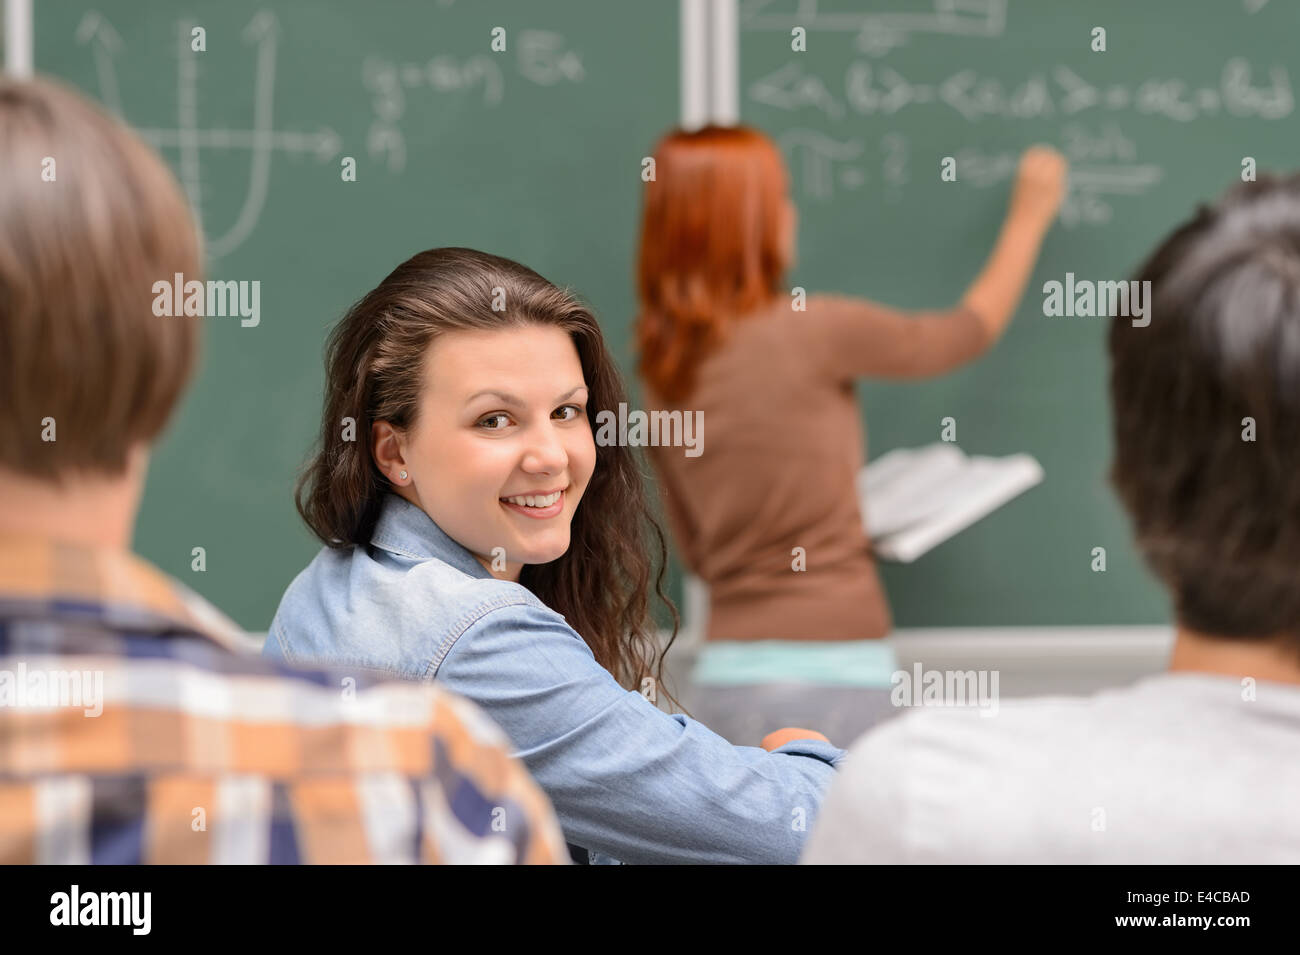 Smiling student girl sitting woman au cours de leçon de mathématiques Banque D'Images